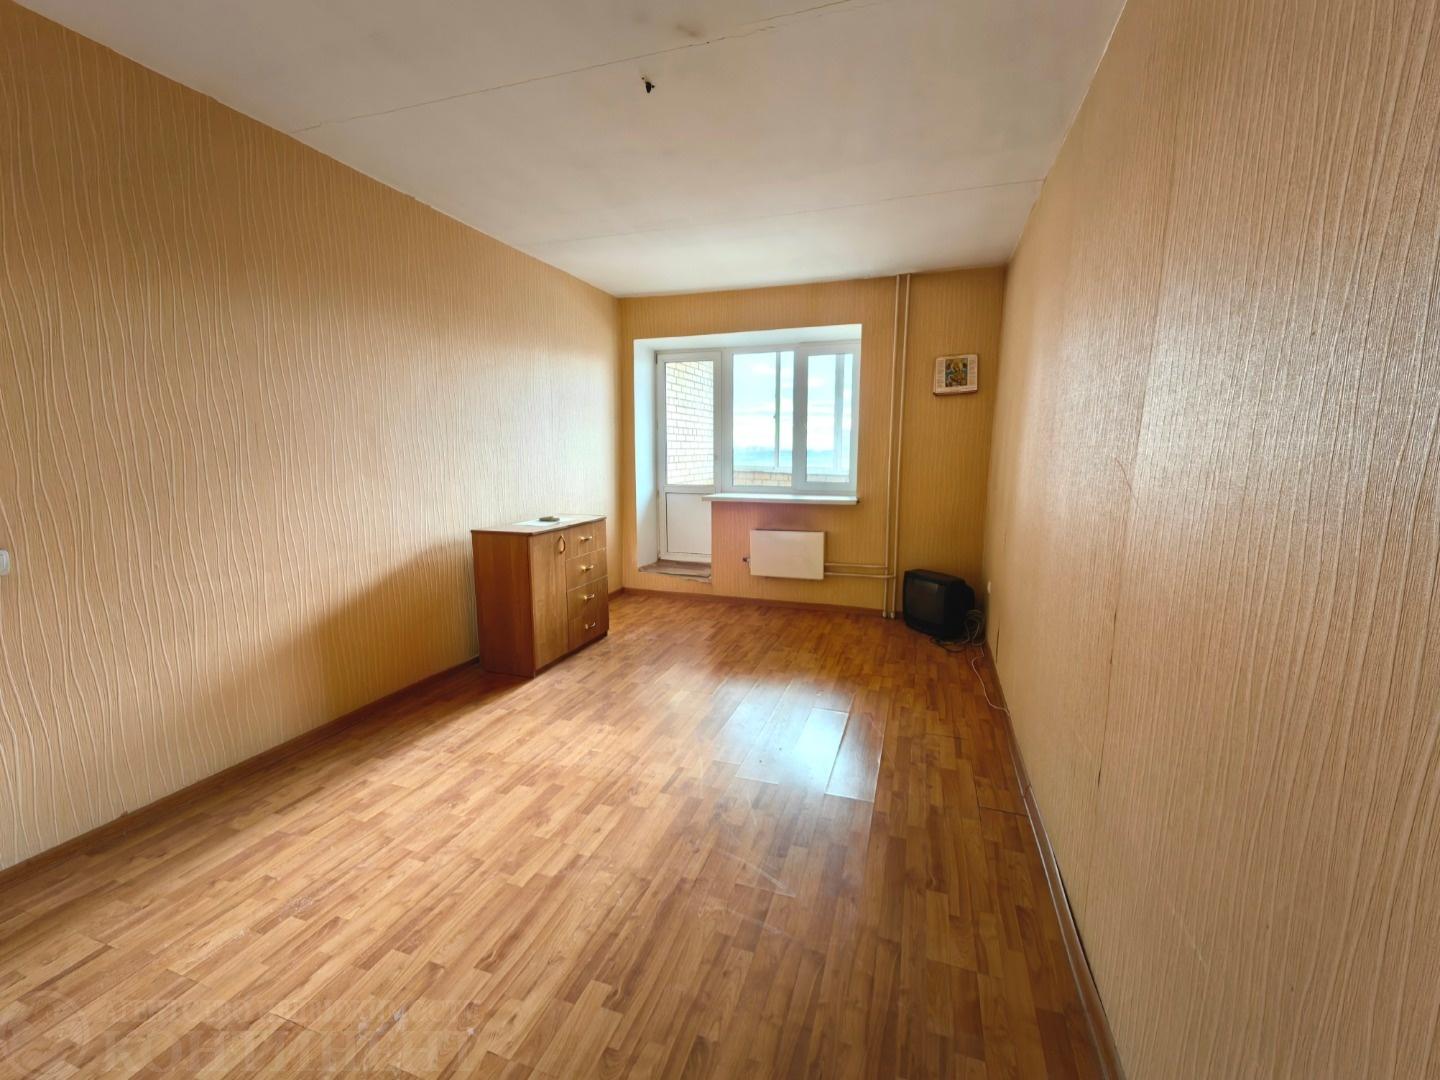 Продается просторная 1-комнатная квартира в тихом, уютном районе г. Щелково, расположенная на 8 этаже 10 этажного кирпичного дома. 

Отличная планировка – большая кухня 9 кв.м, изолированная комната 17,5 кв.м, санузел совмещенный, в прихожей есть возможность сделать зарытую гардеробную зону или уста